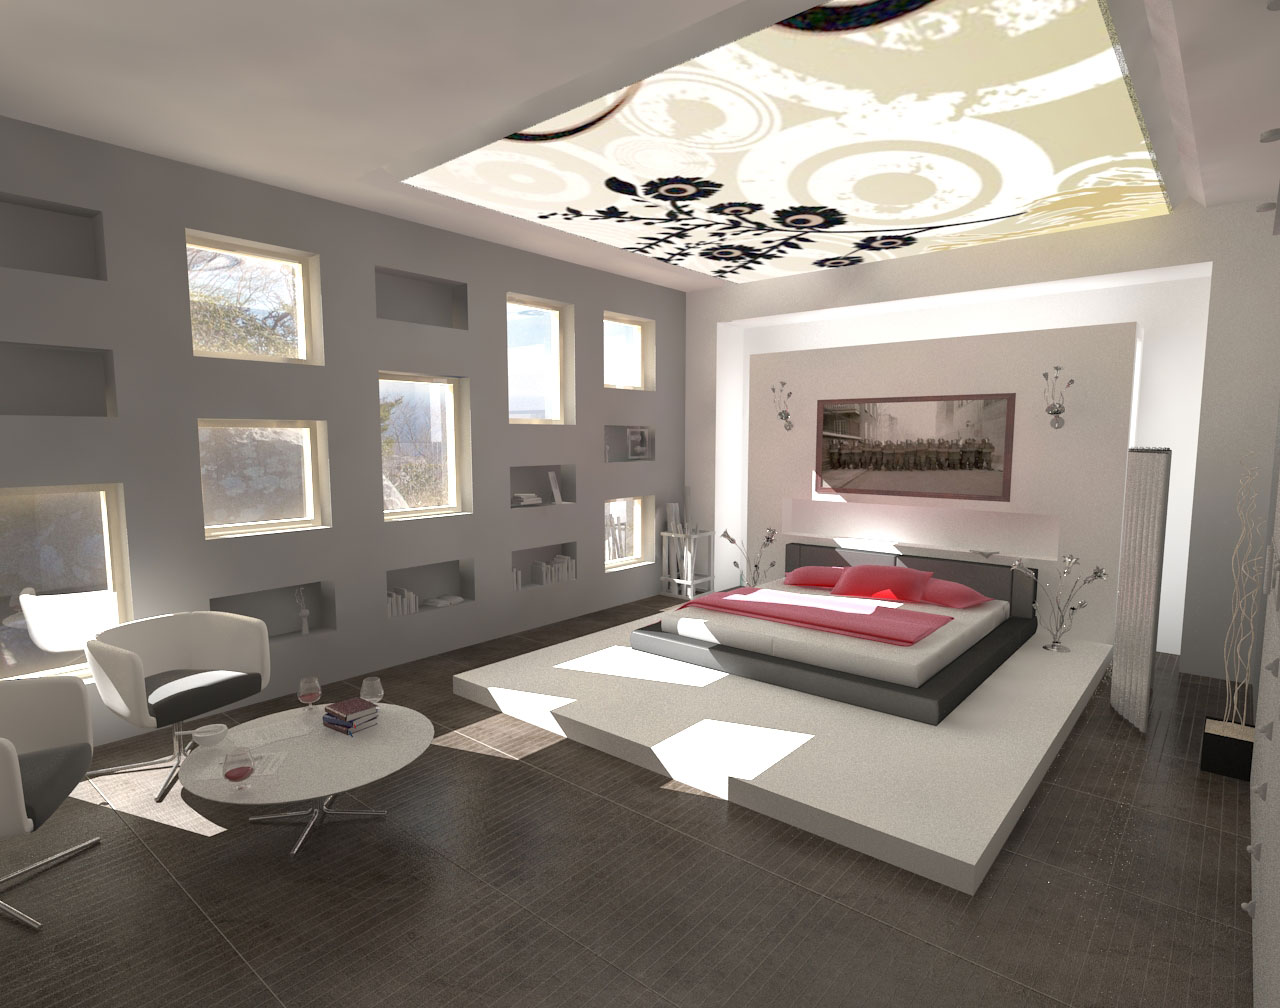 New Small Home Interior Design Ideas 